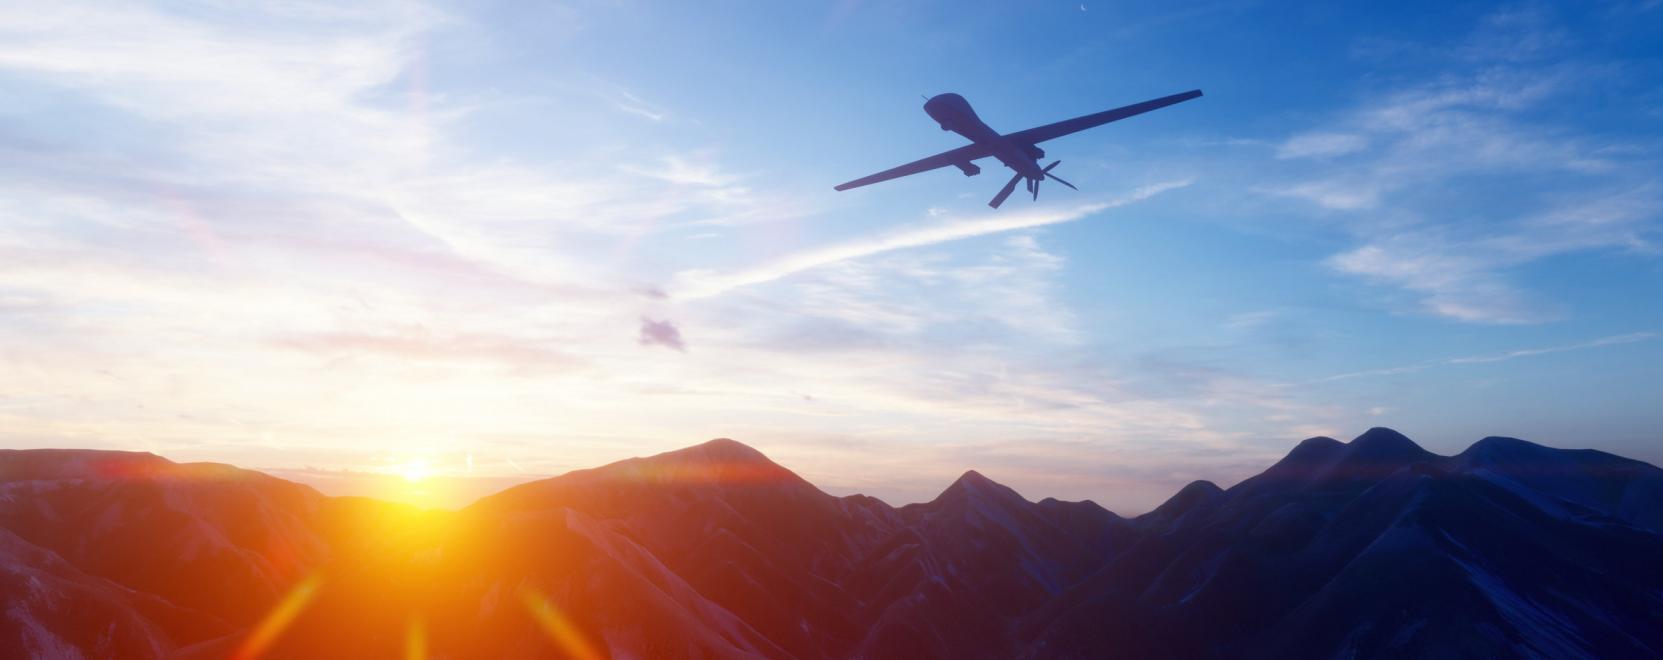 Megdőlt a leghosszabb drónrepülés világrekordja